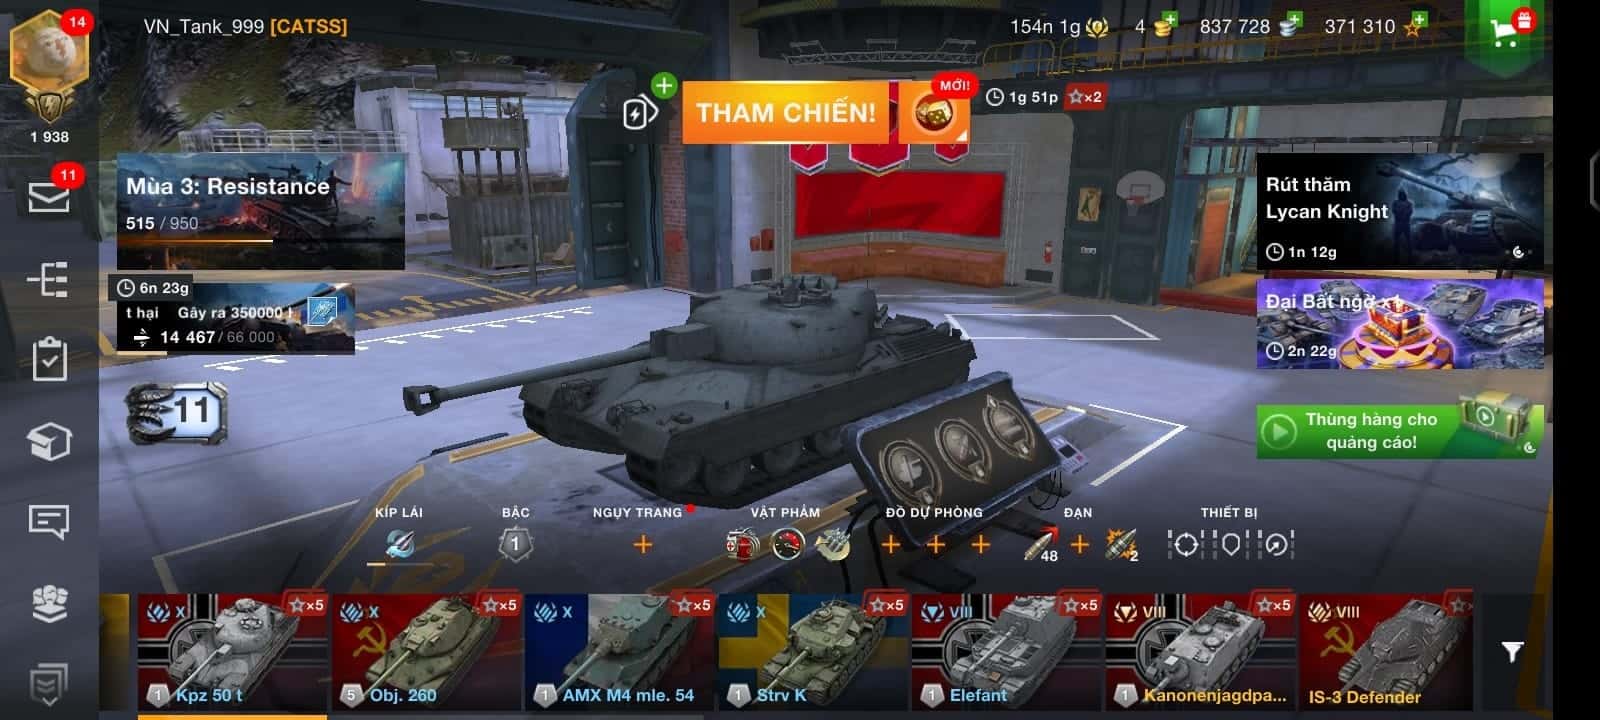 Hình ảnh tài khoản World Of Tanks Blitz xịn